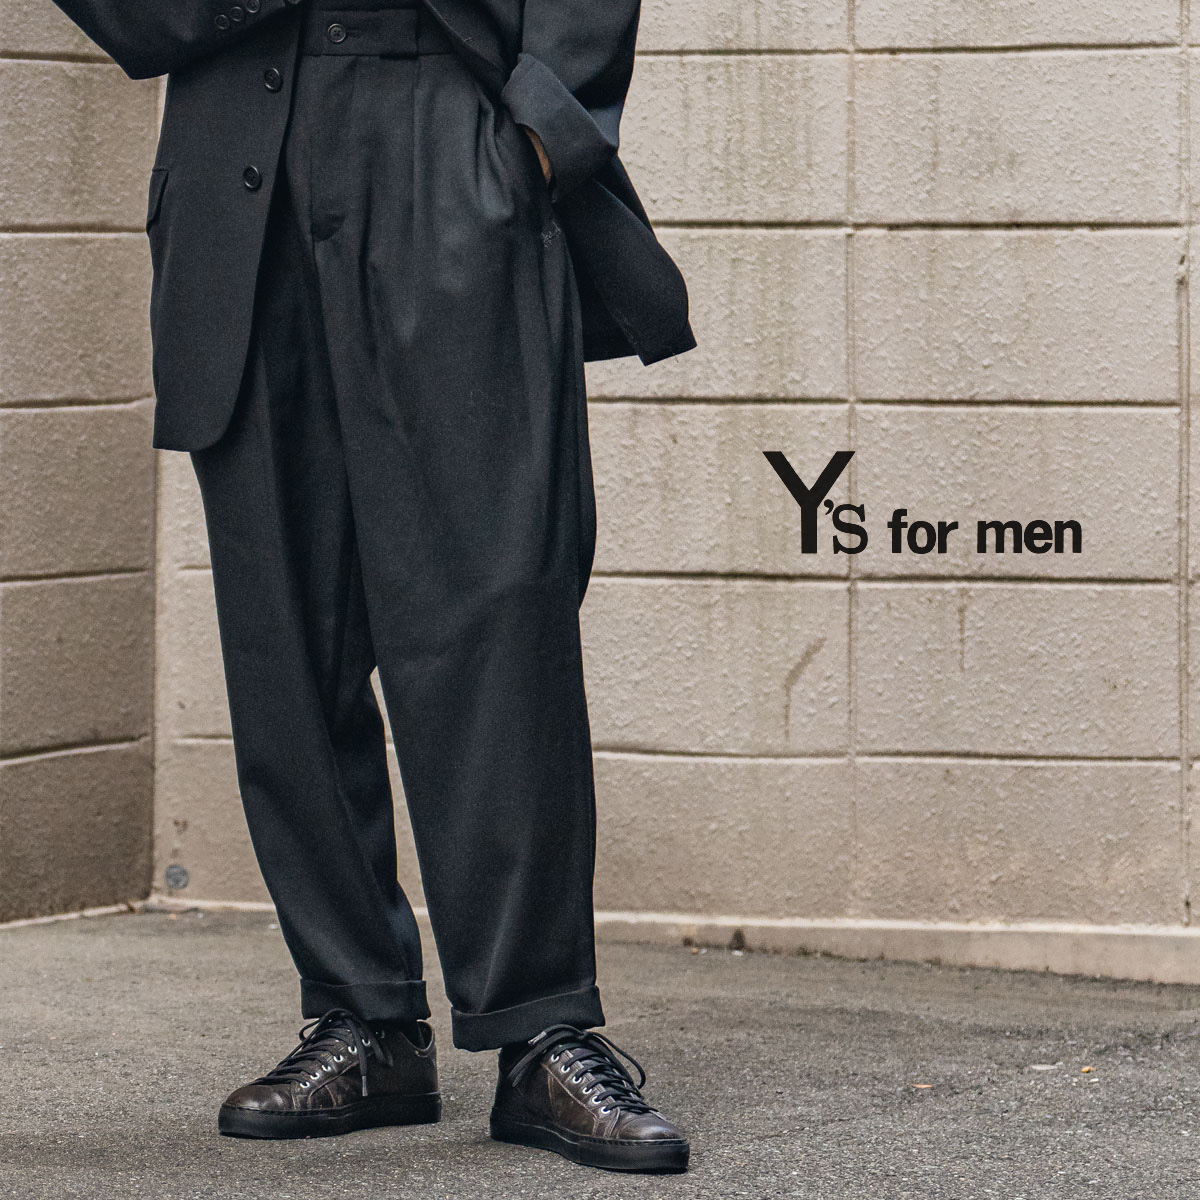 【シーズン限定価格】 y's for men ウールパンツ